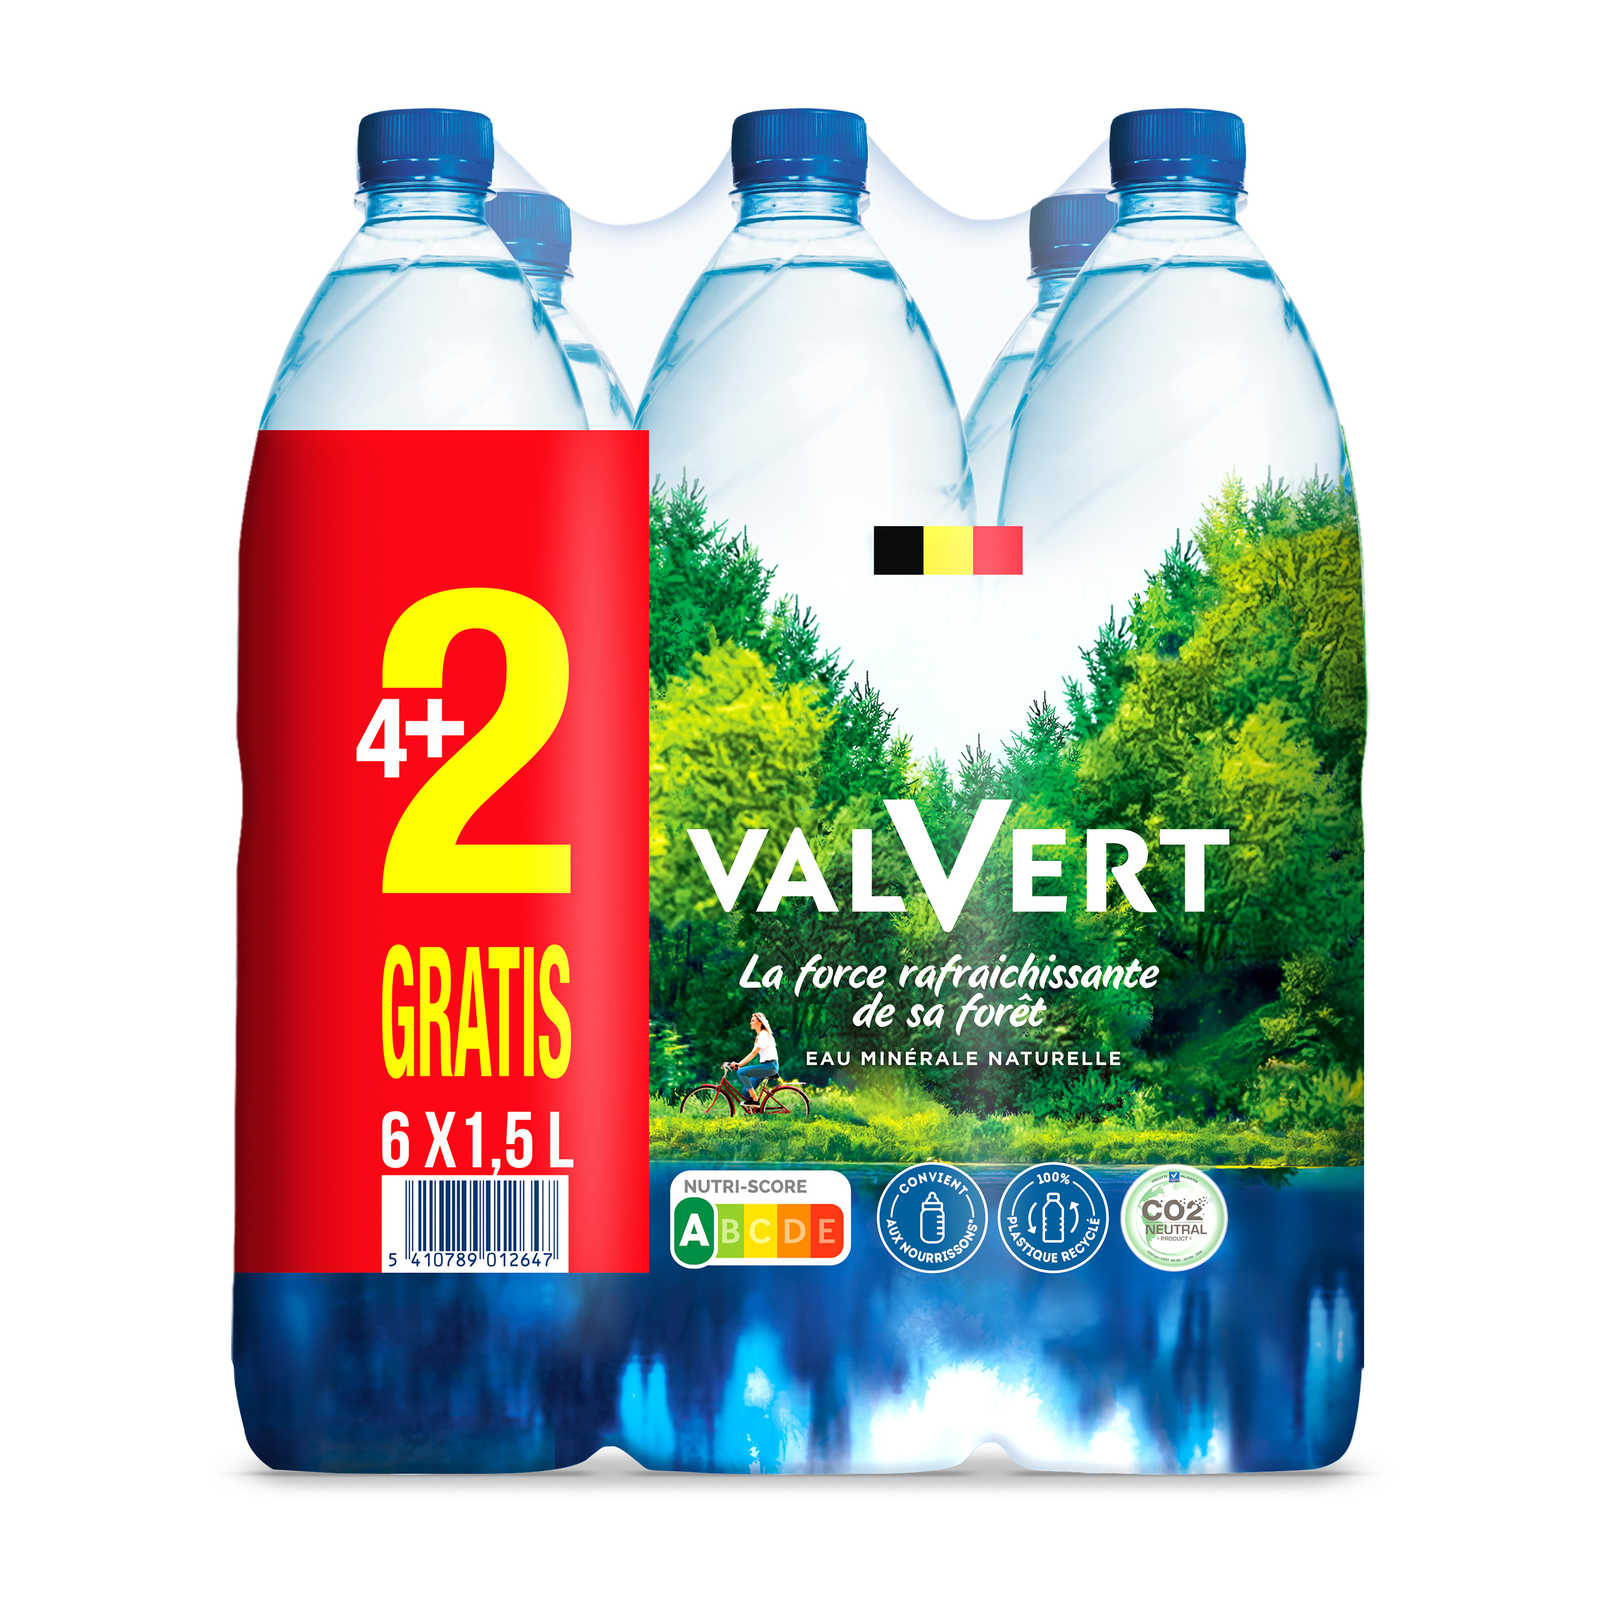 Valvert